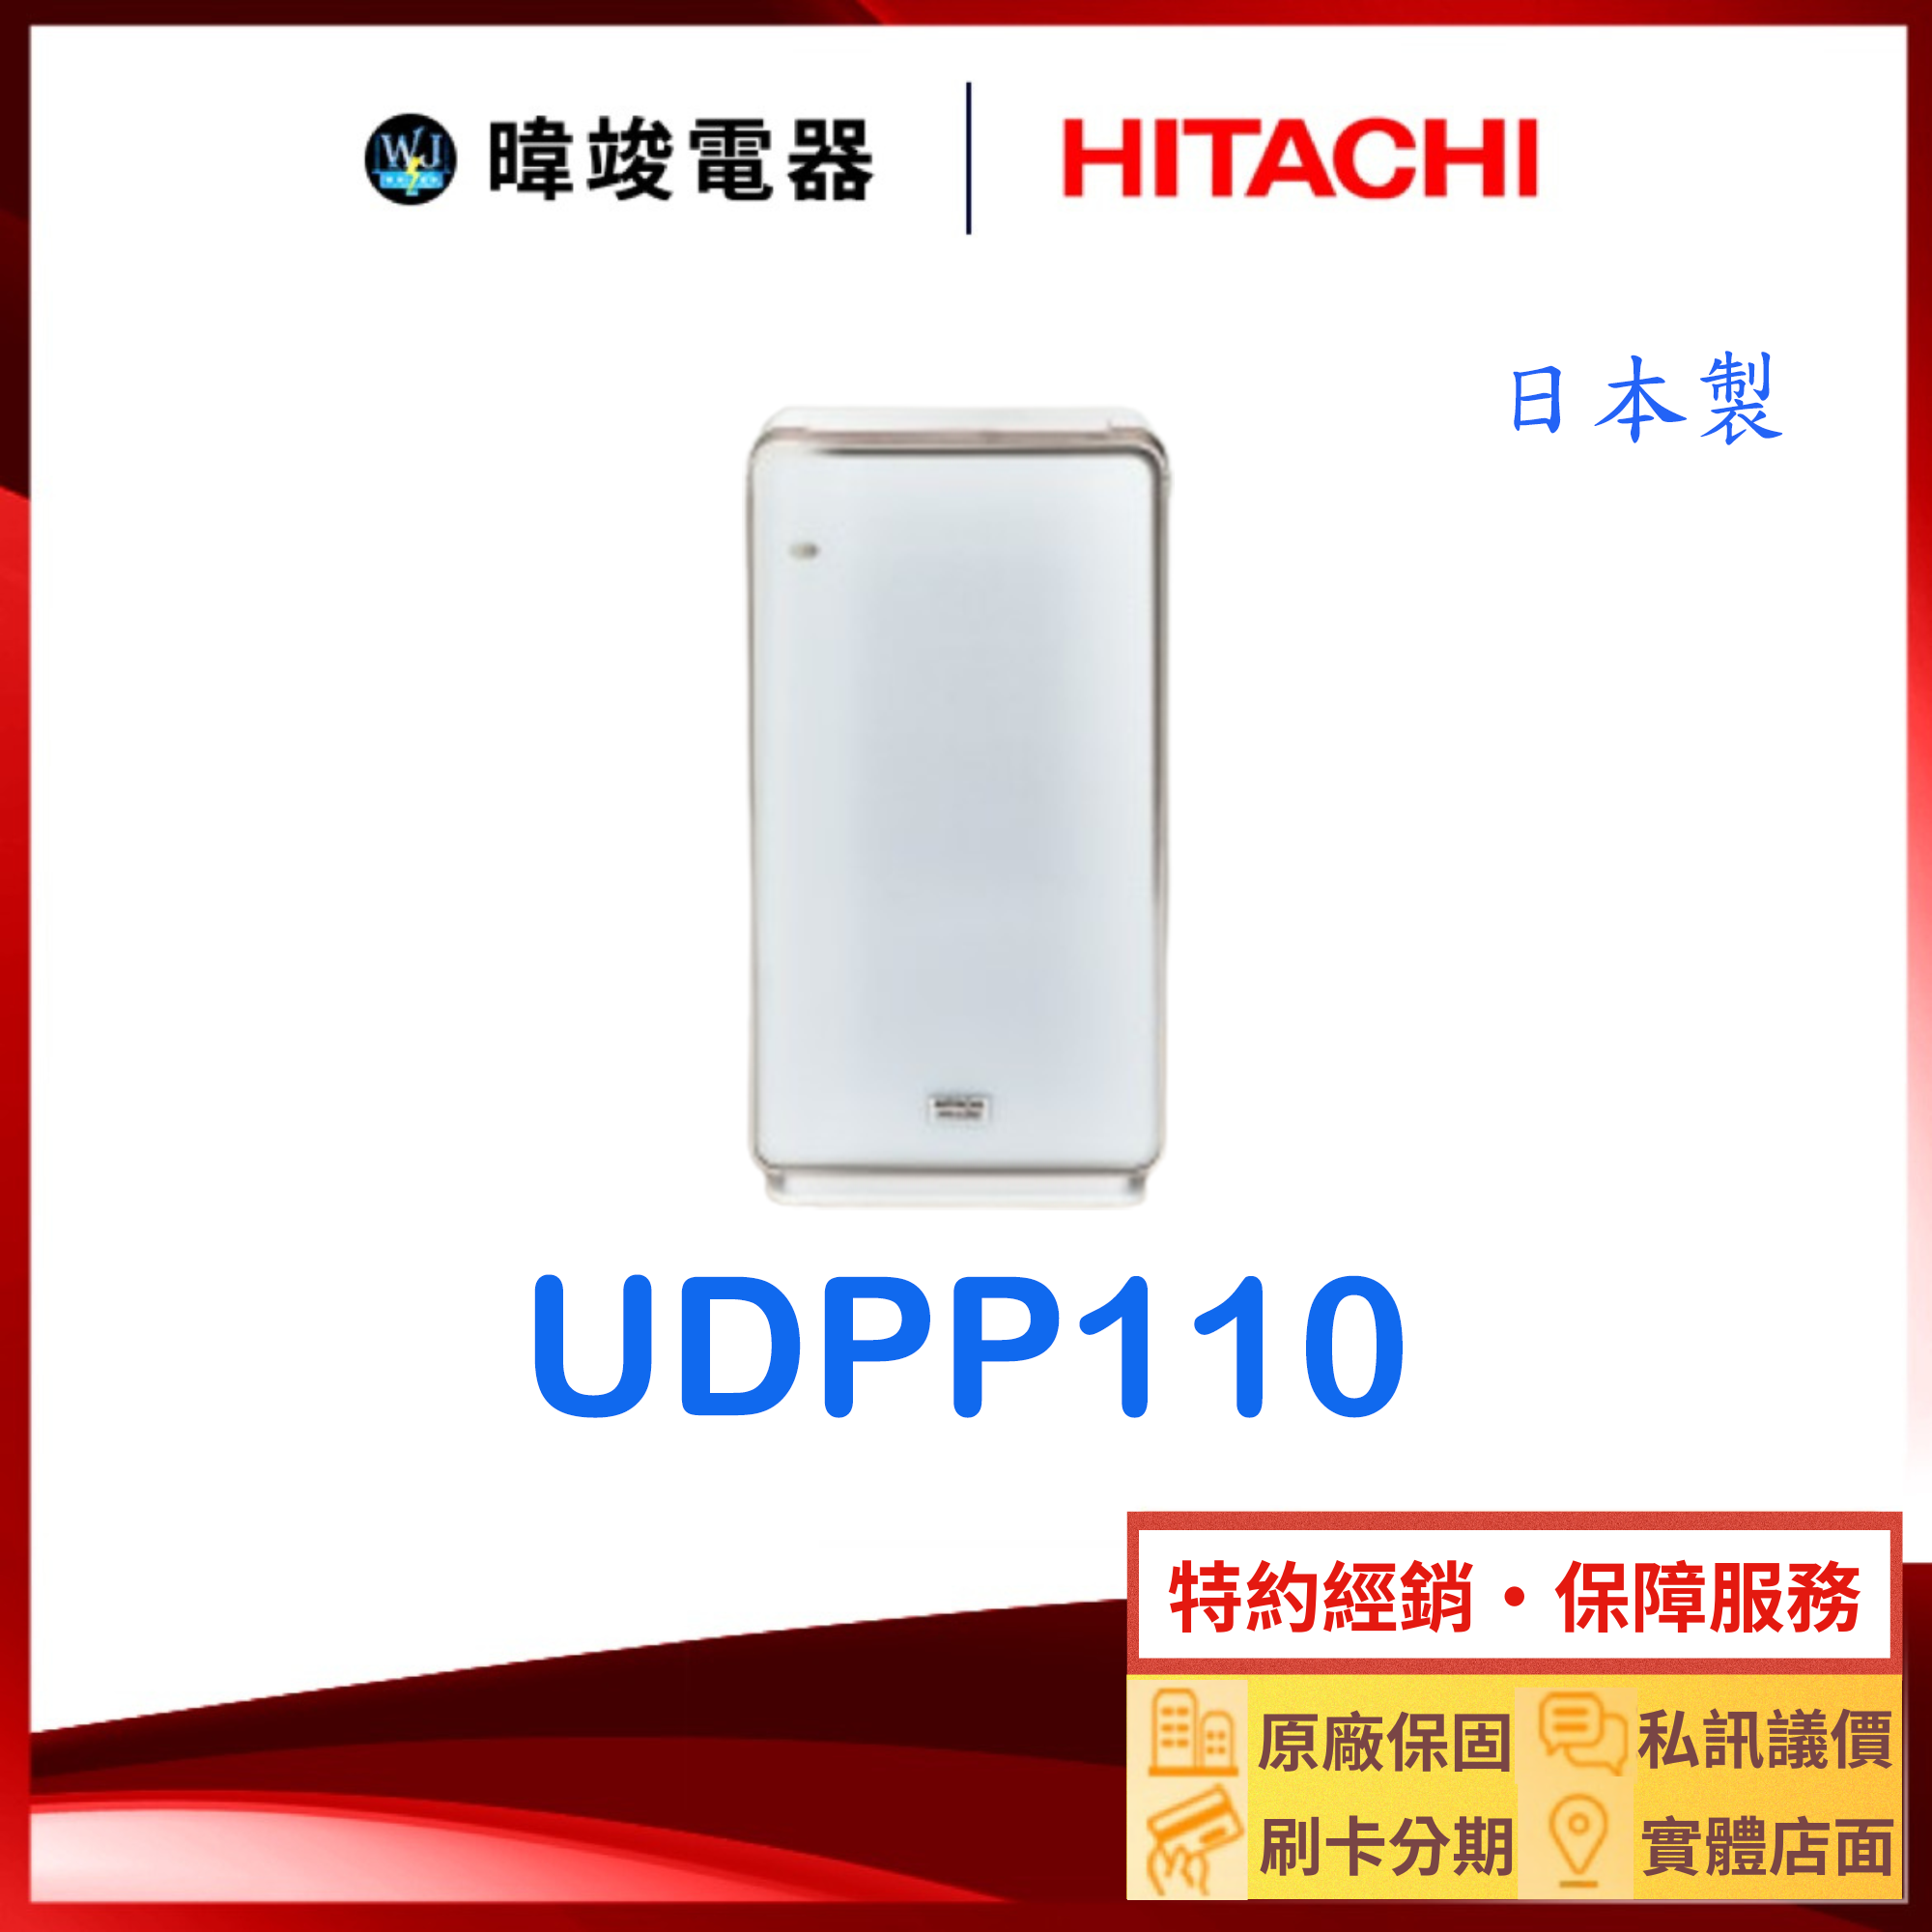 現貨特惠【暐竣電器】HITACHI 日立 UDP-P110加濕空氣清淨機 日本製 UDPP110 清淨機